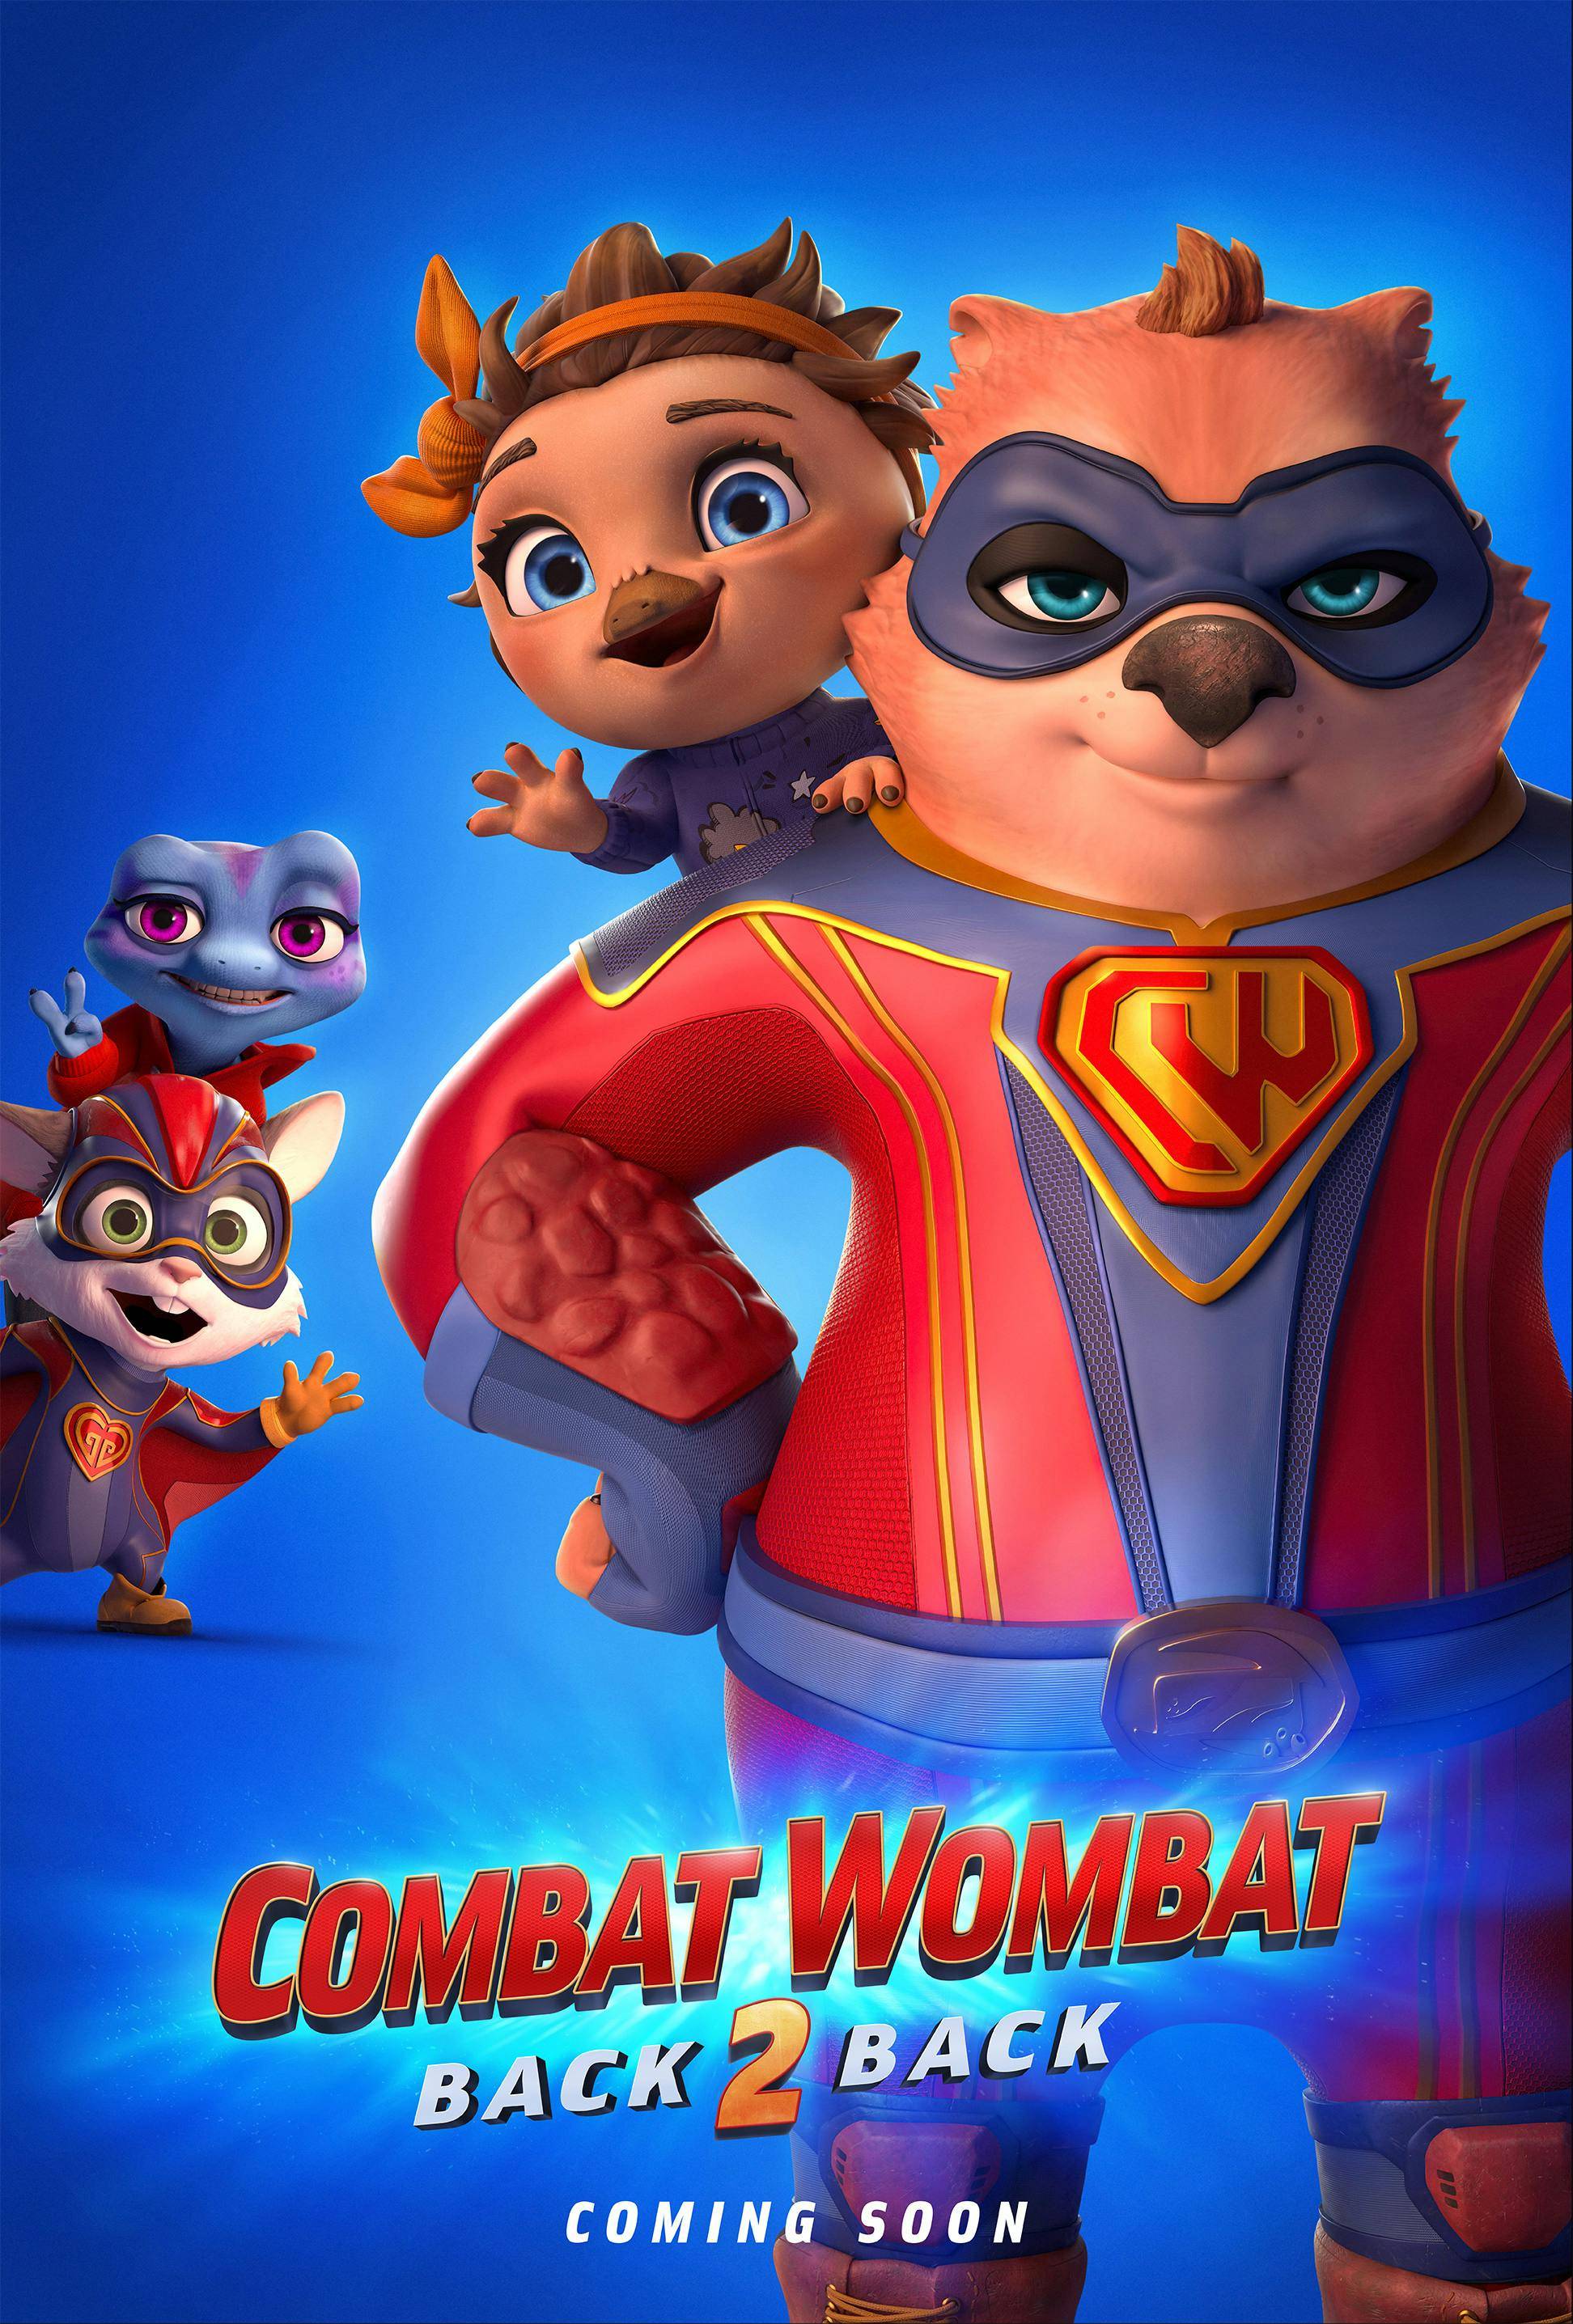 Combat Wombat 2